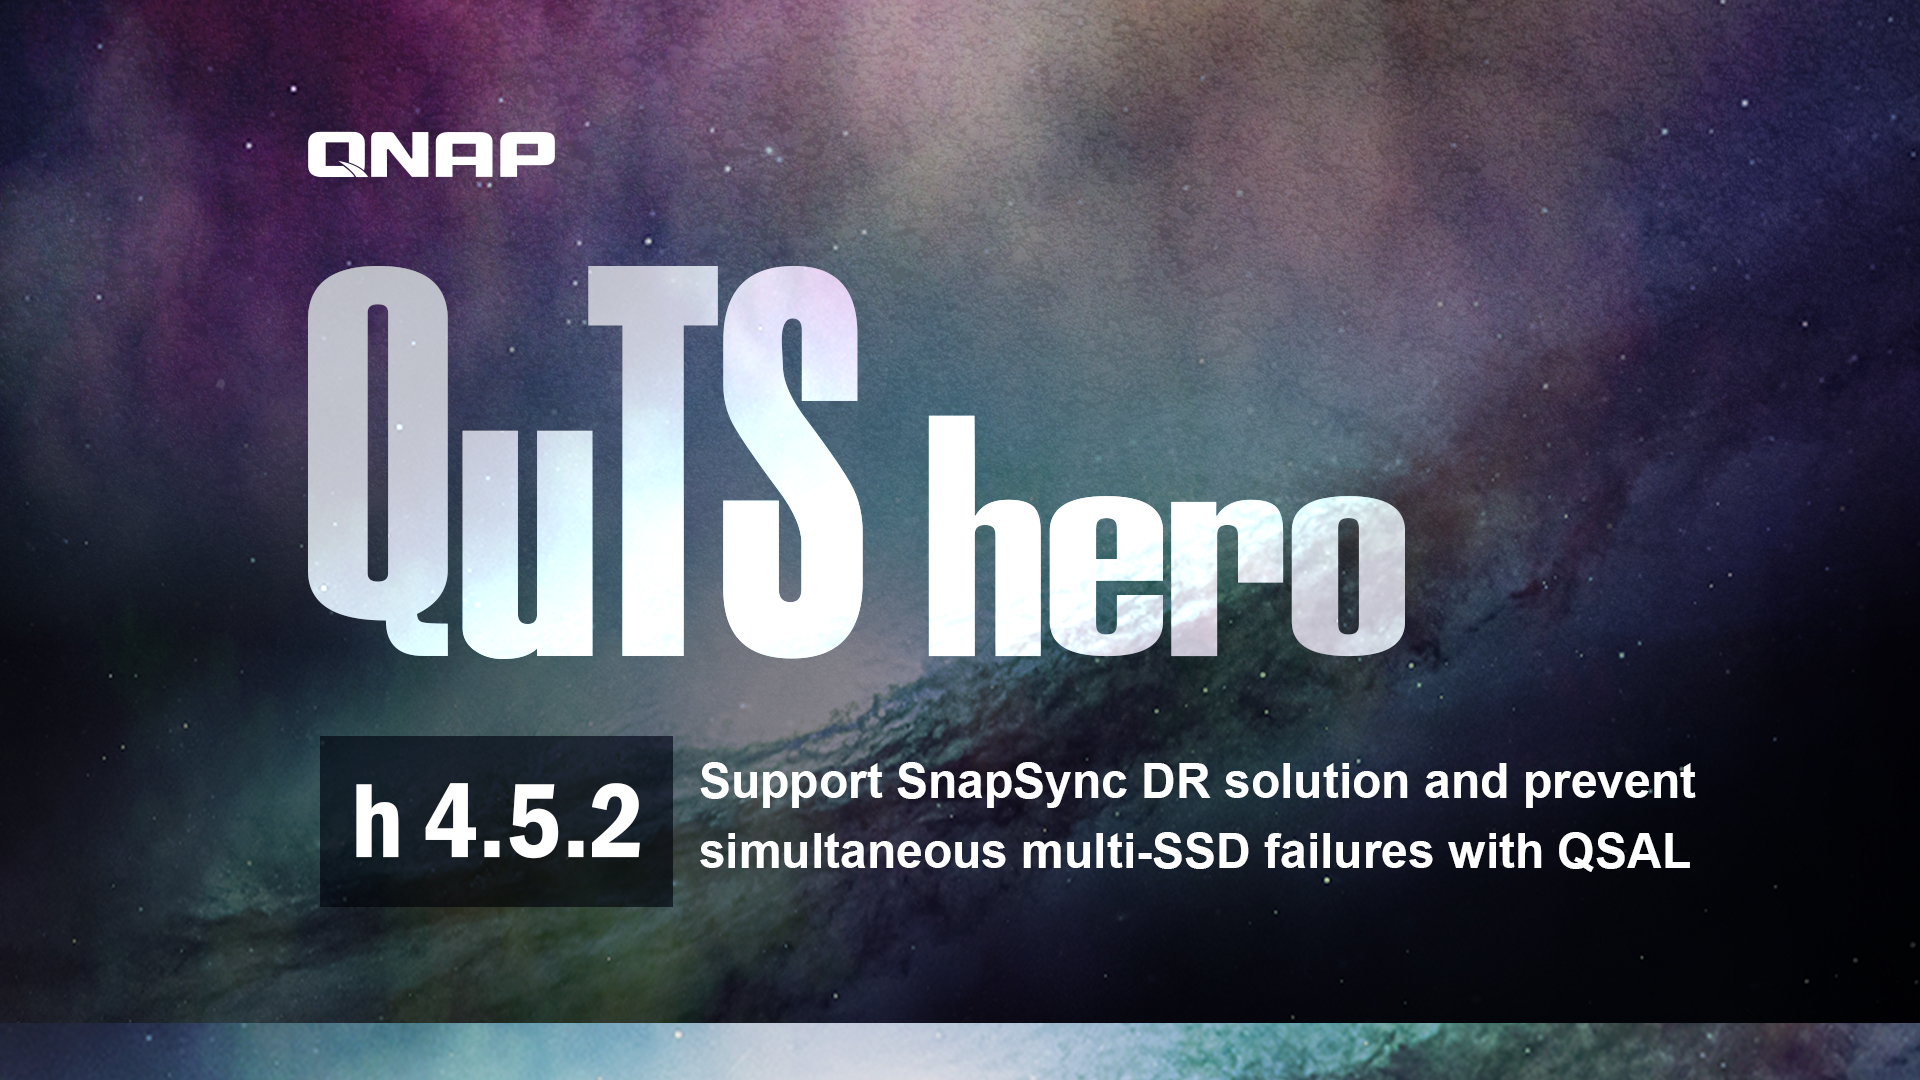 QuTS hero h4.5.2